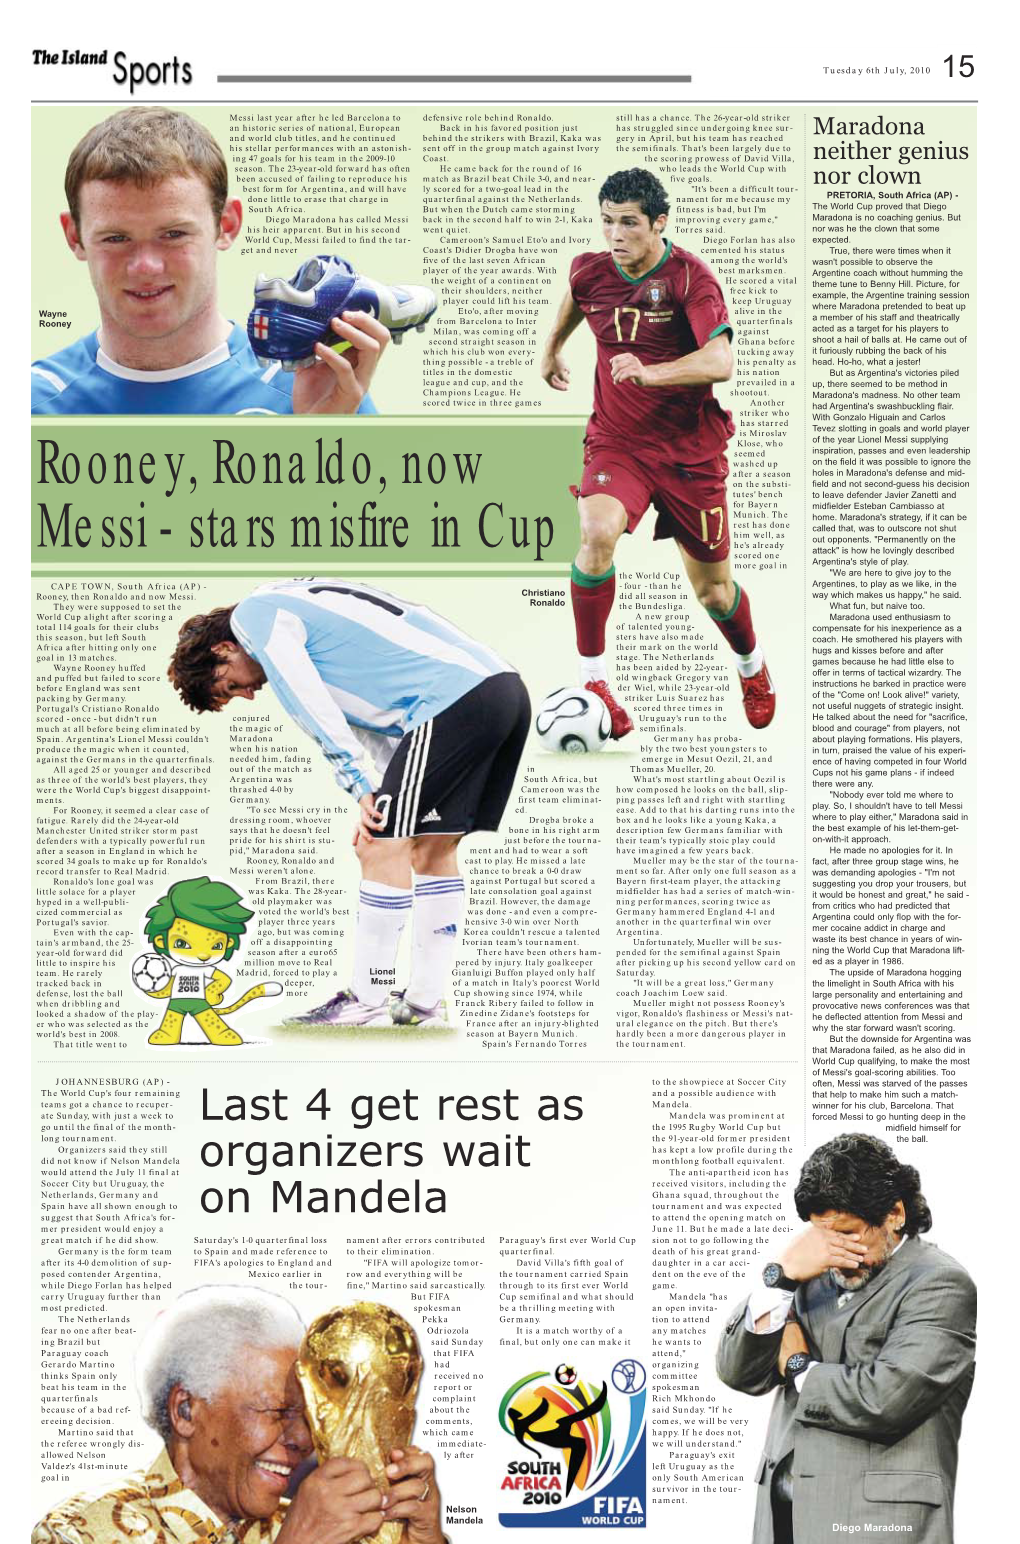 Rooney, Ronaldo, Now Messi